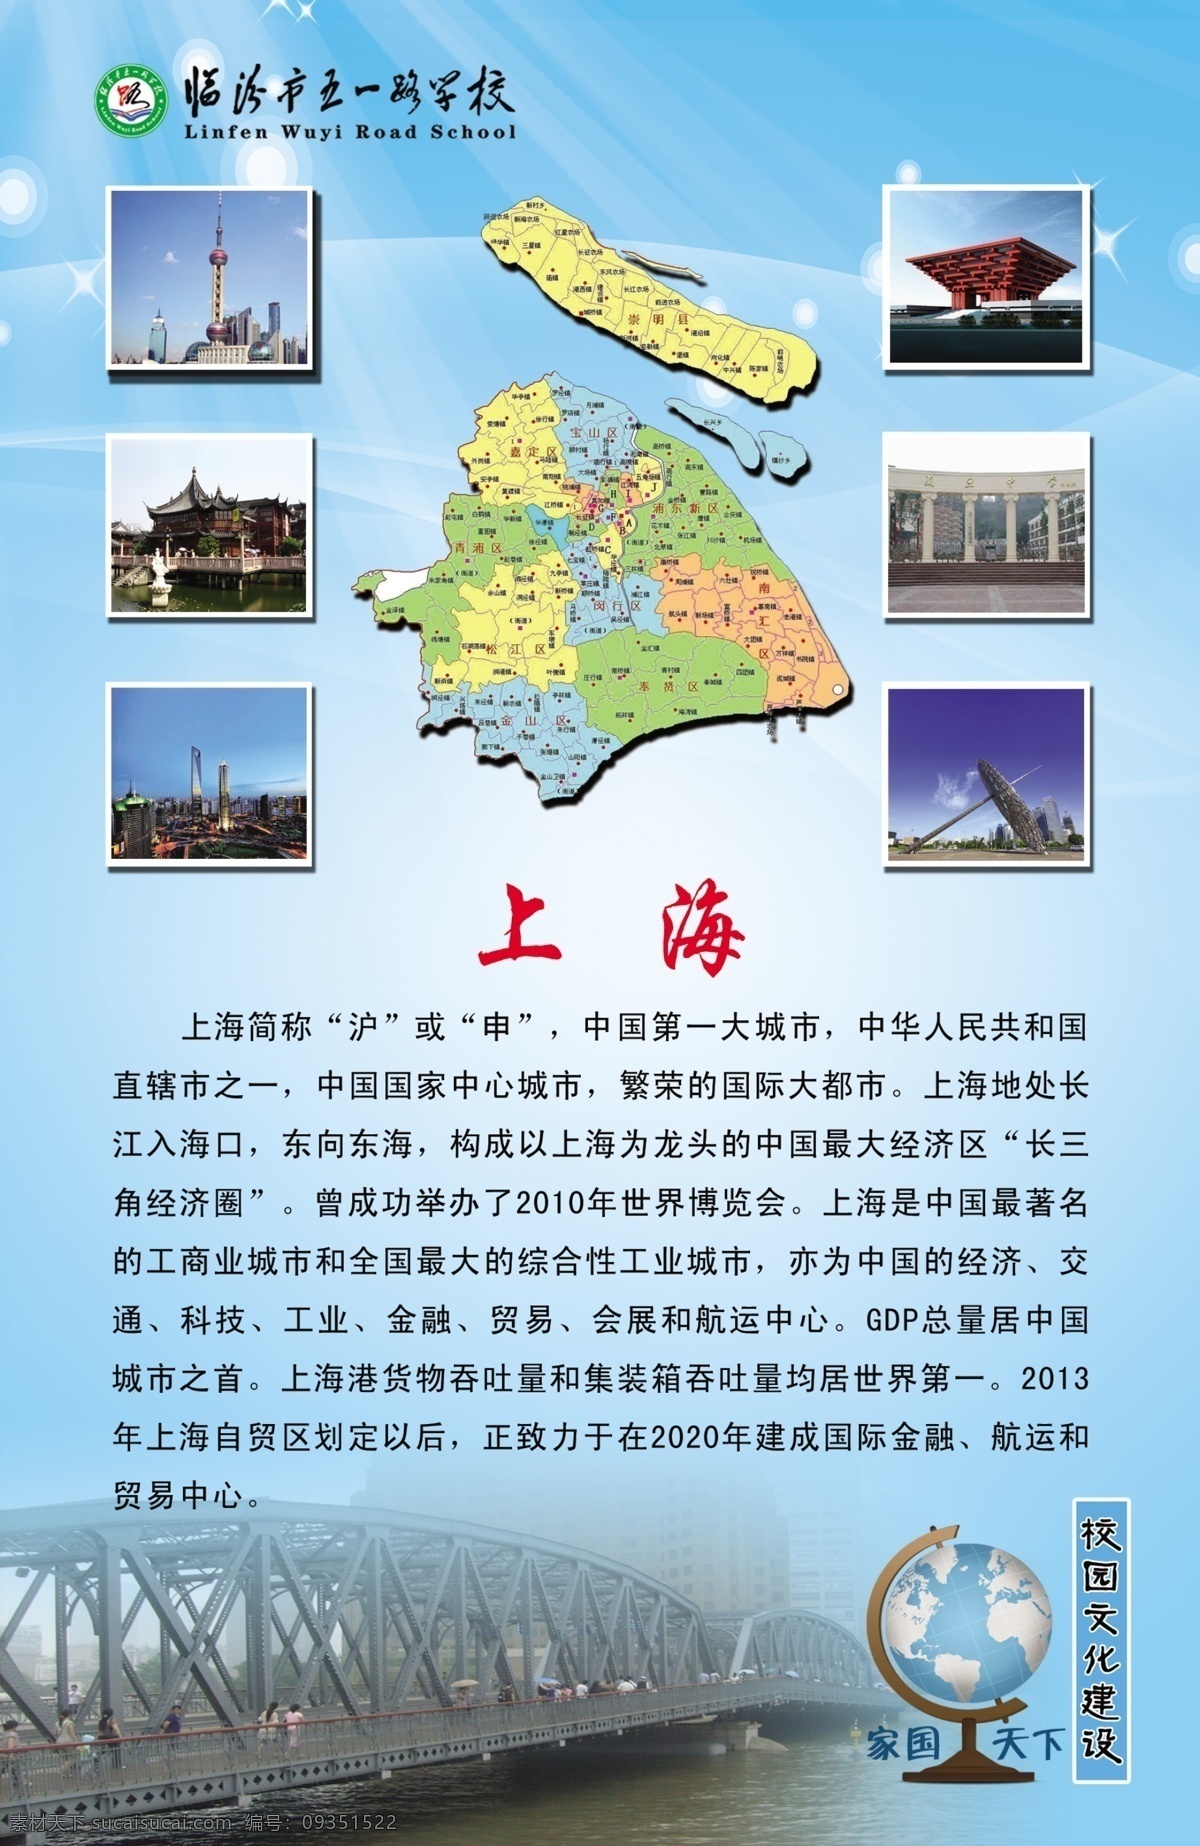 上海 校园文化 家国 天下 上海素材下载 模板下载 海报 展板 经济 文化 旅游景点 沪 旅游 广告设计模板 源文件 展板模板